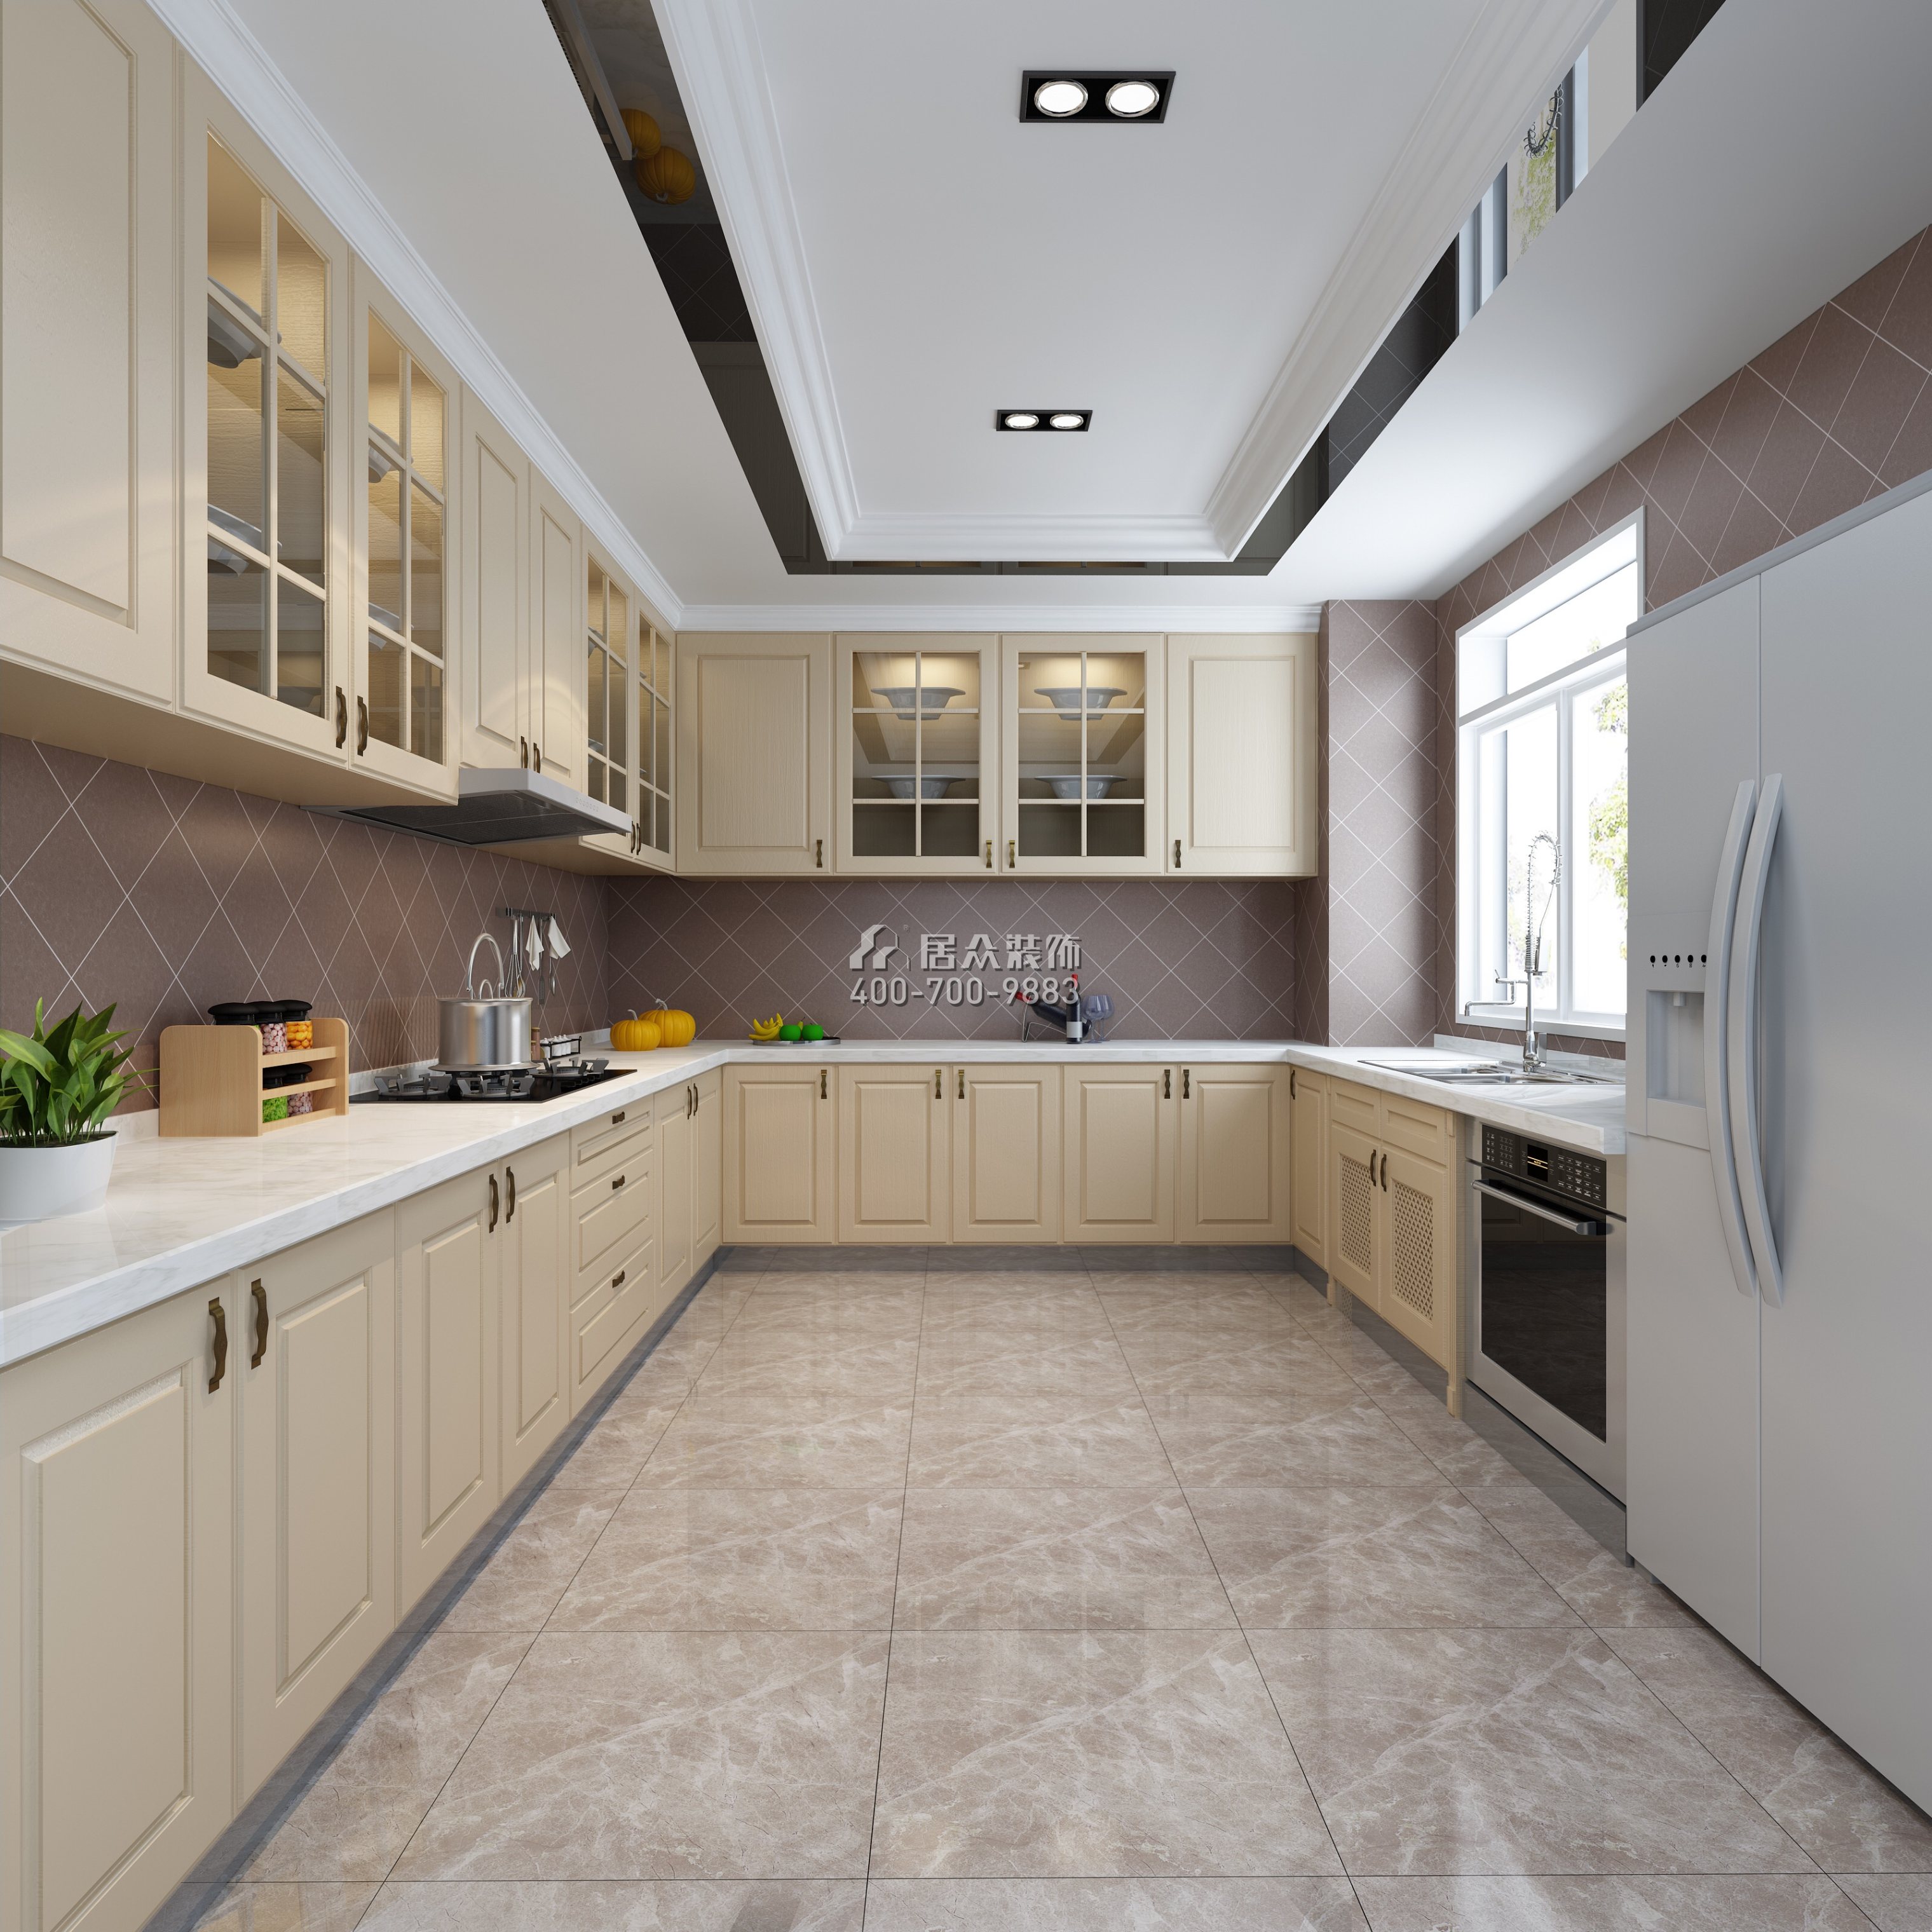 星匯灣320平方米現代簡約風格平層戶型廚房裝修效果圖